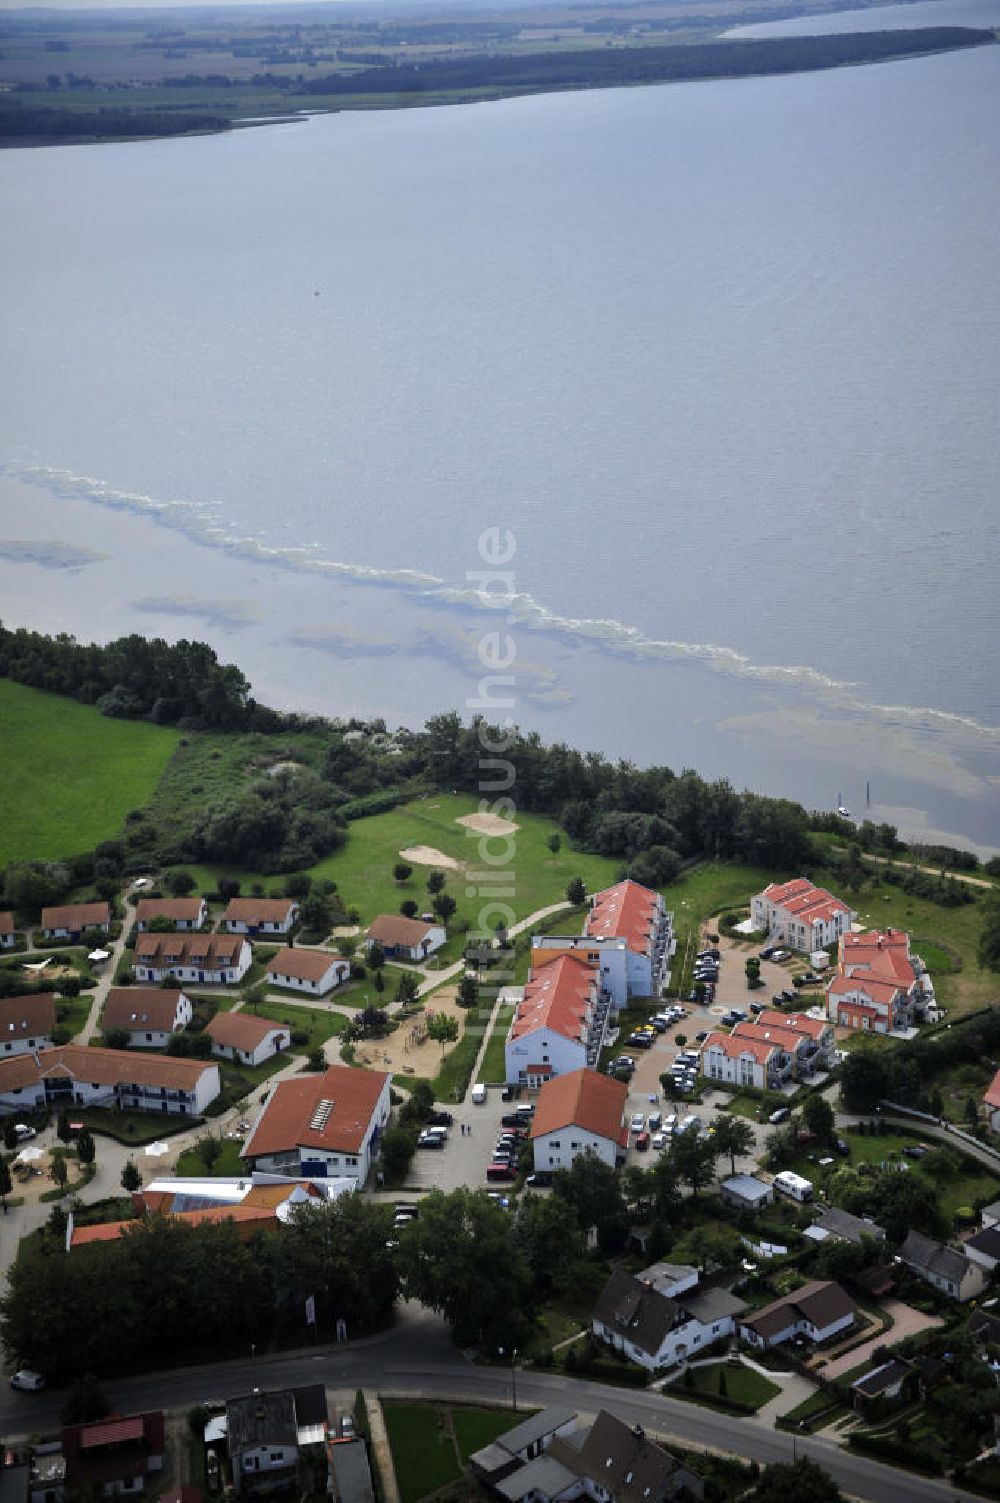 Luftbild Rerik - Feriendorf der AWO SANO gGmbH in Rerik an der Ostsee